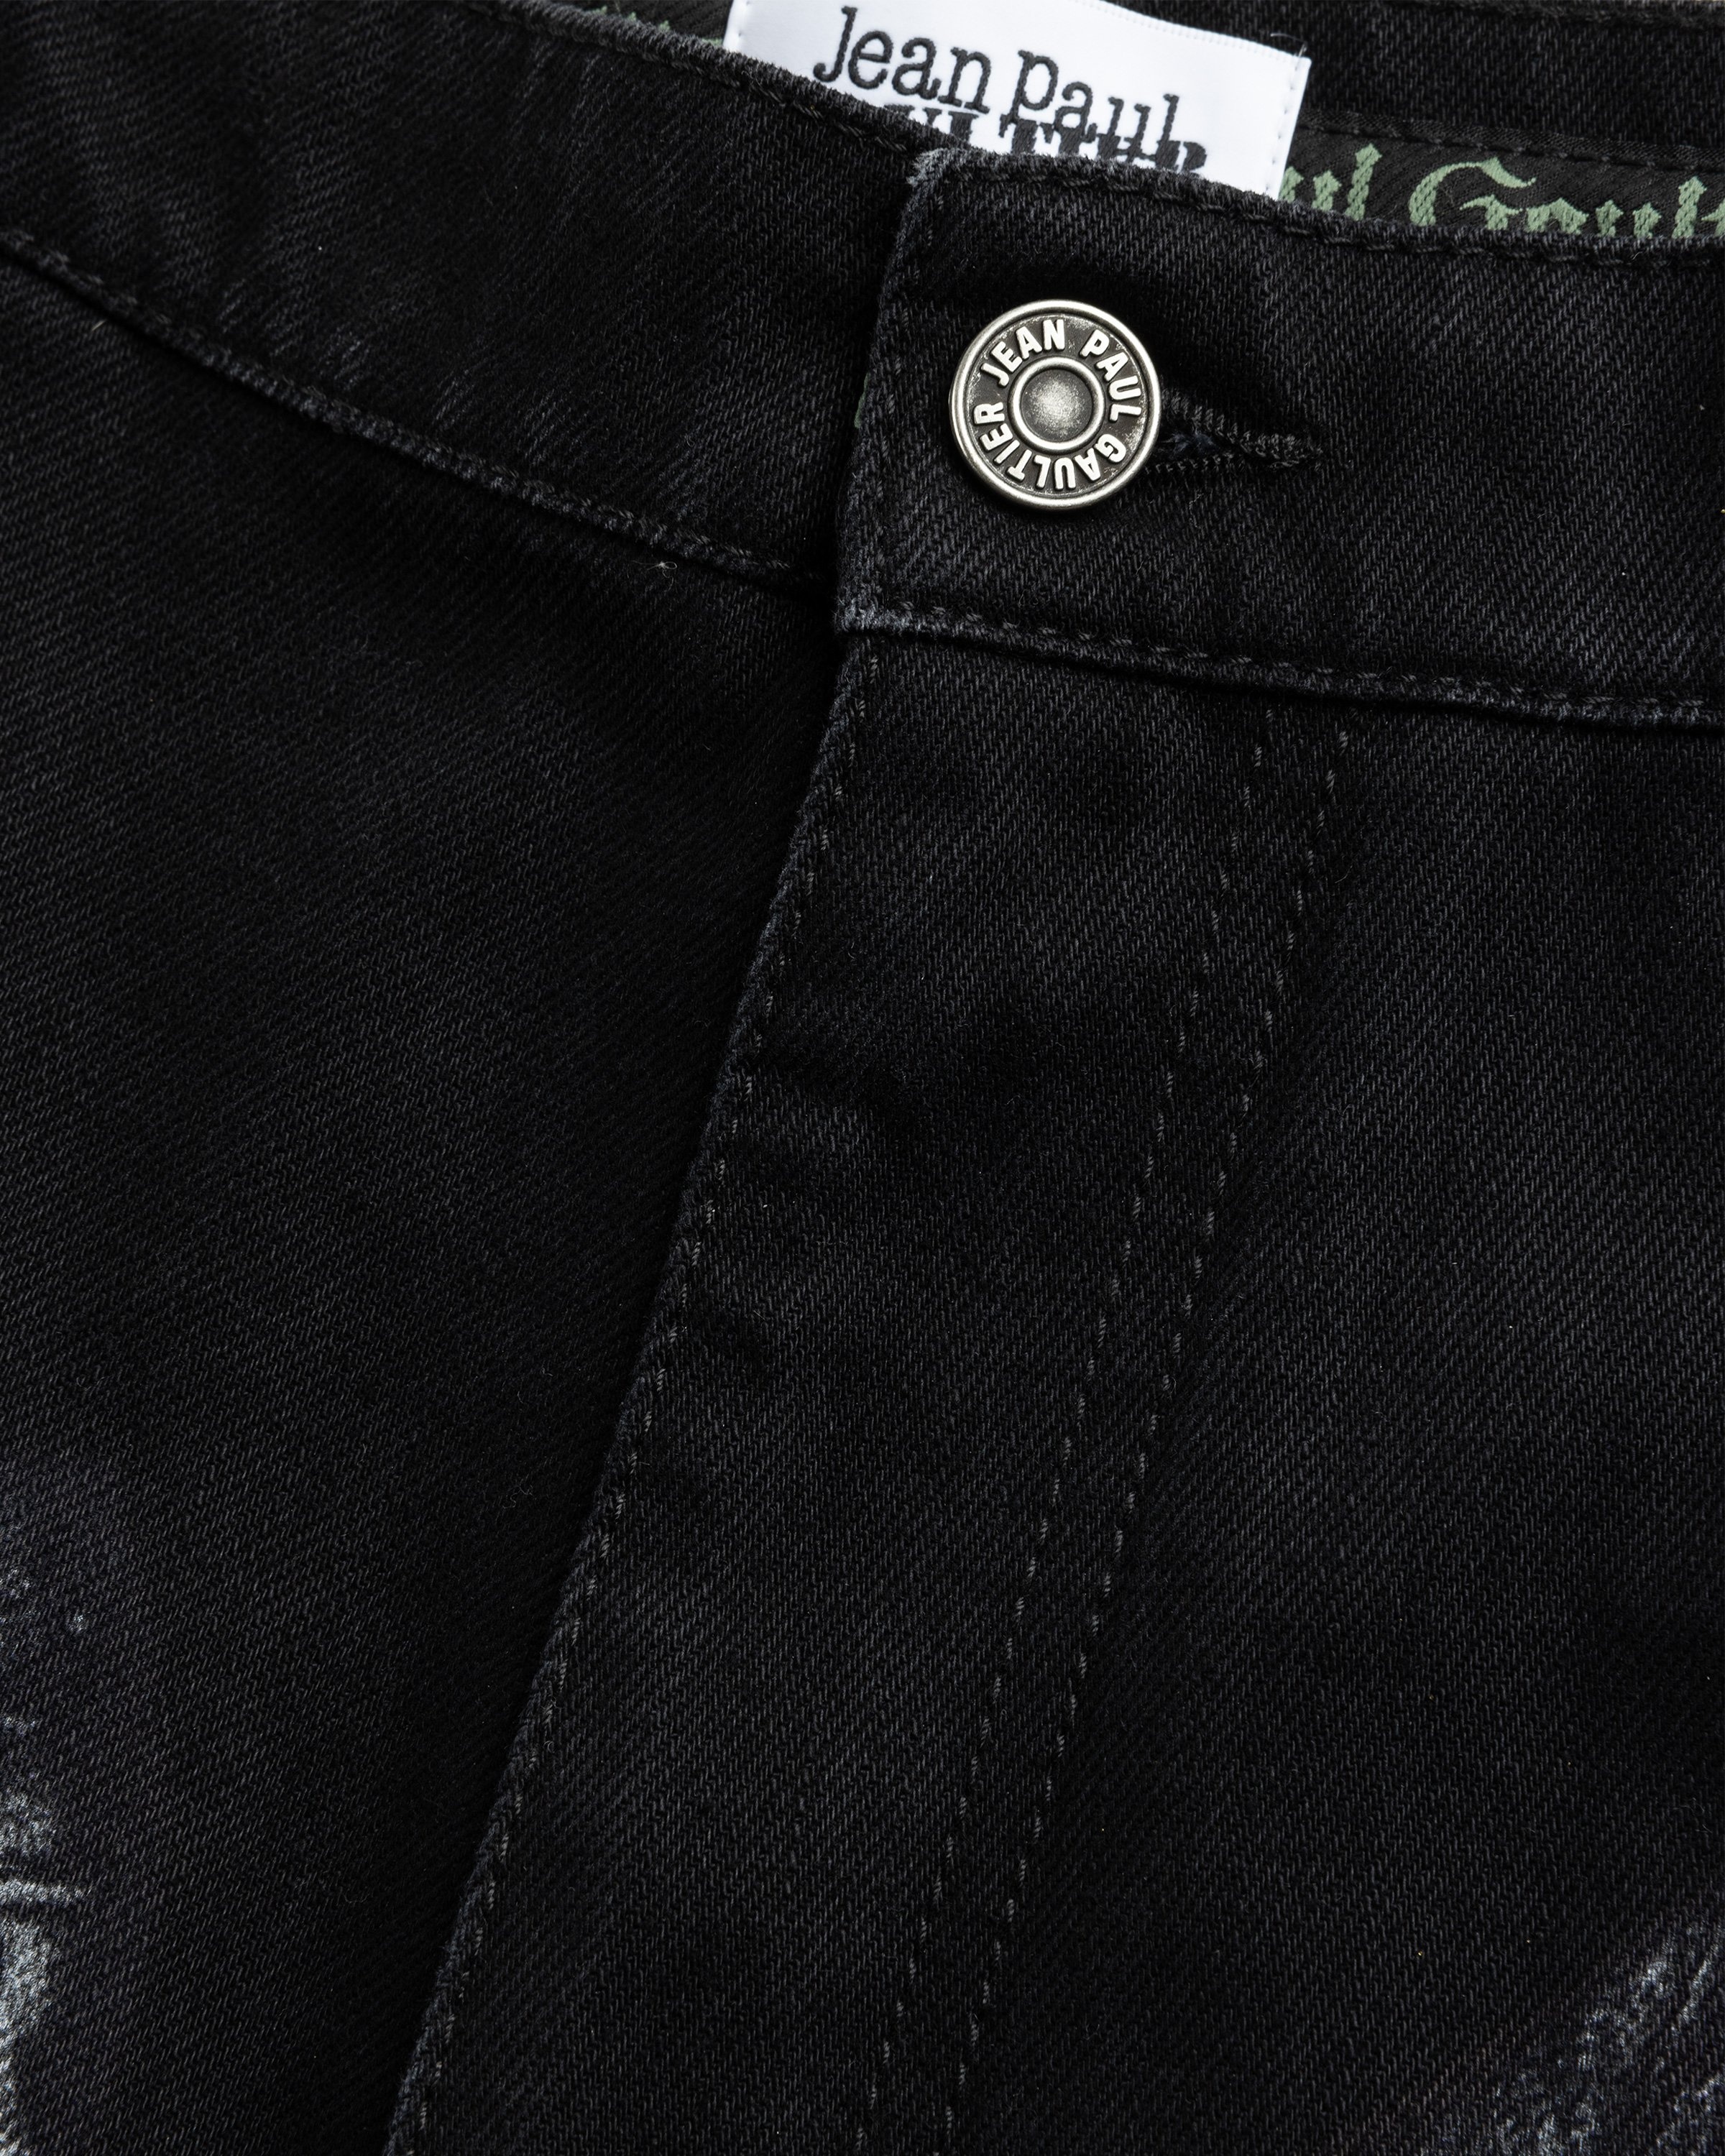 Jean Paul Gaultier – Denim Trompe L'oeil Jeans Black/Gray